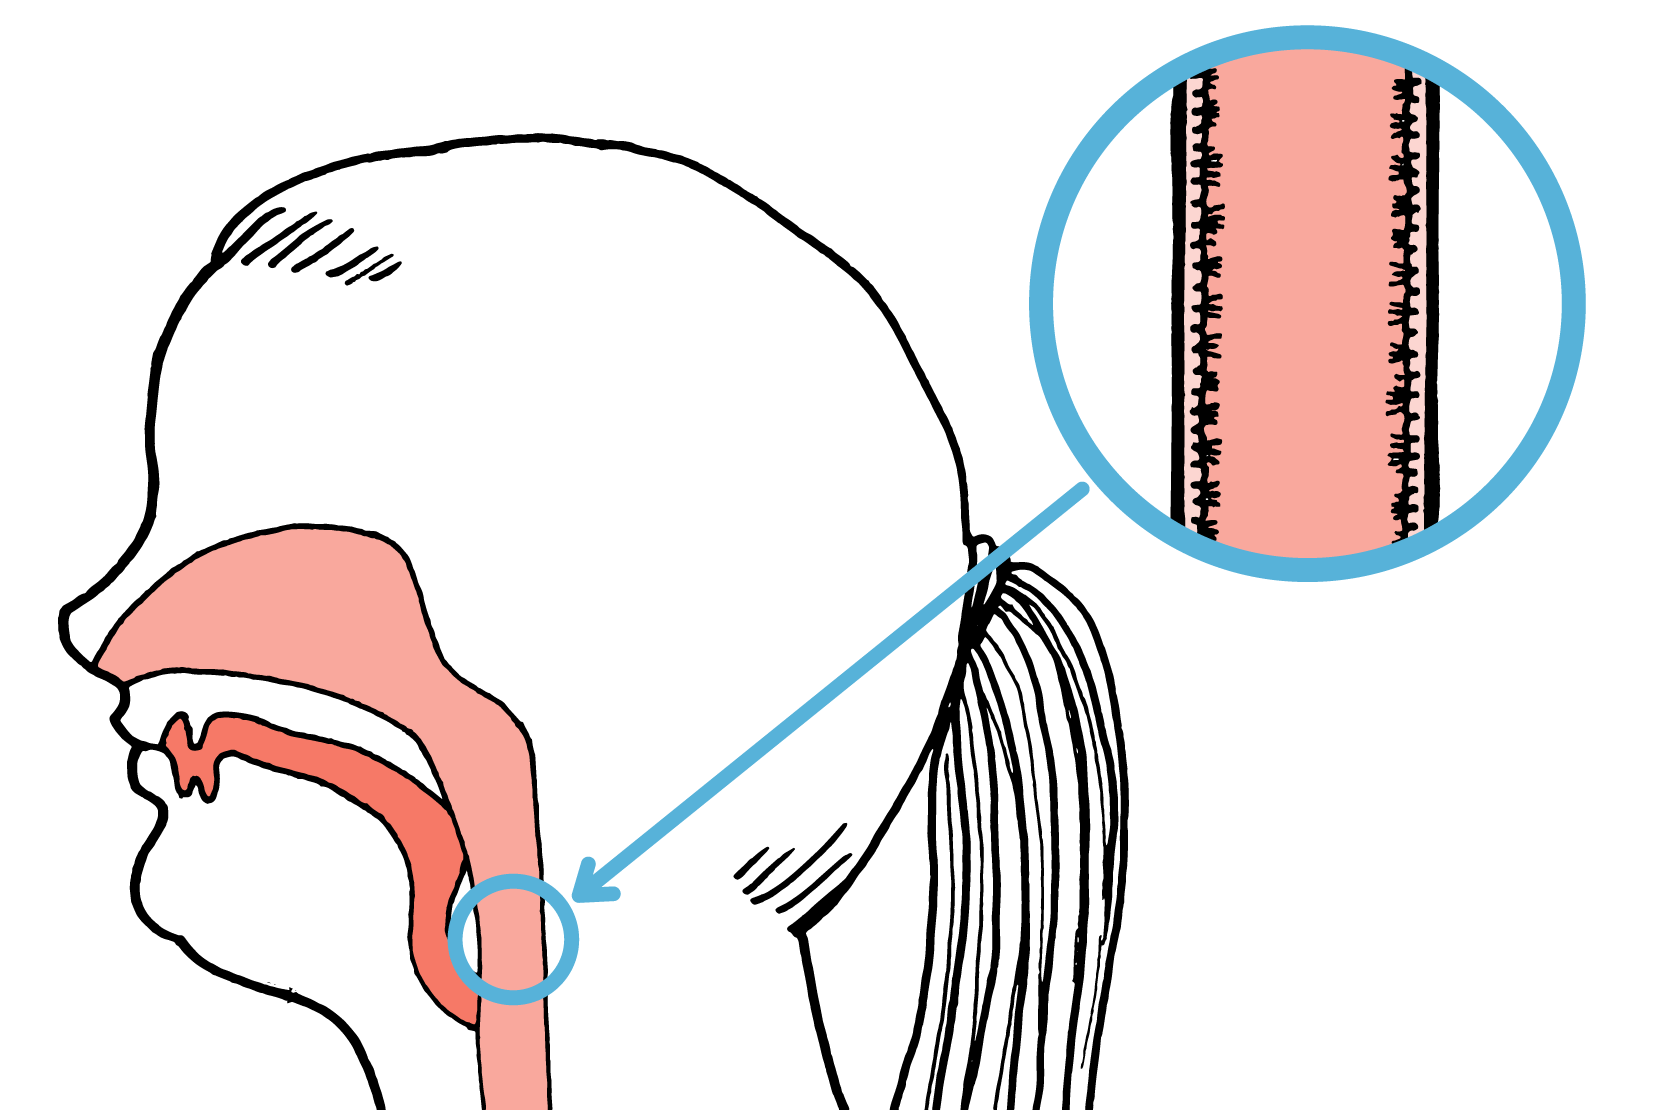 Genomskärning av halsen. Ett utsnitt som visar flimmerhår är förstorat. Illustration.